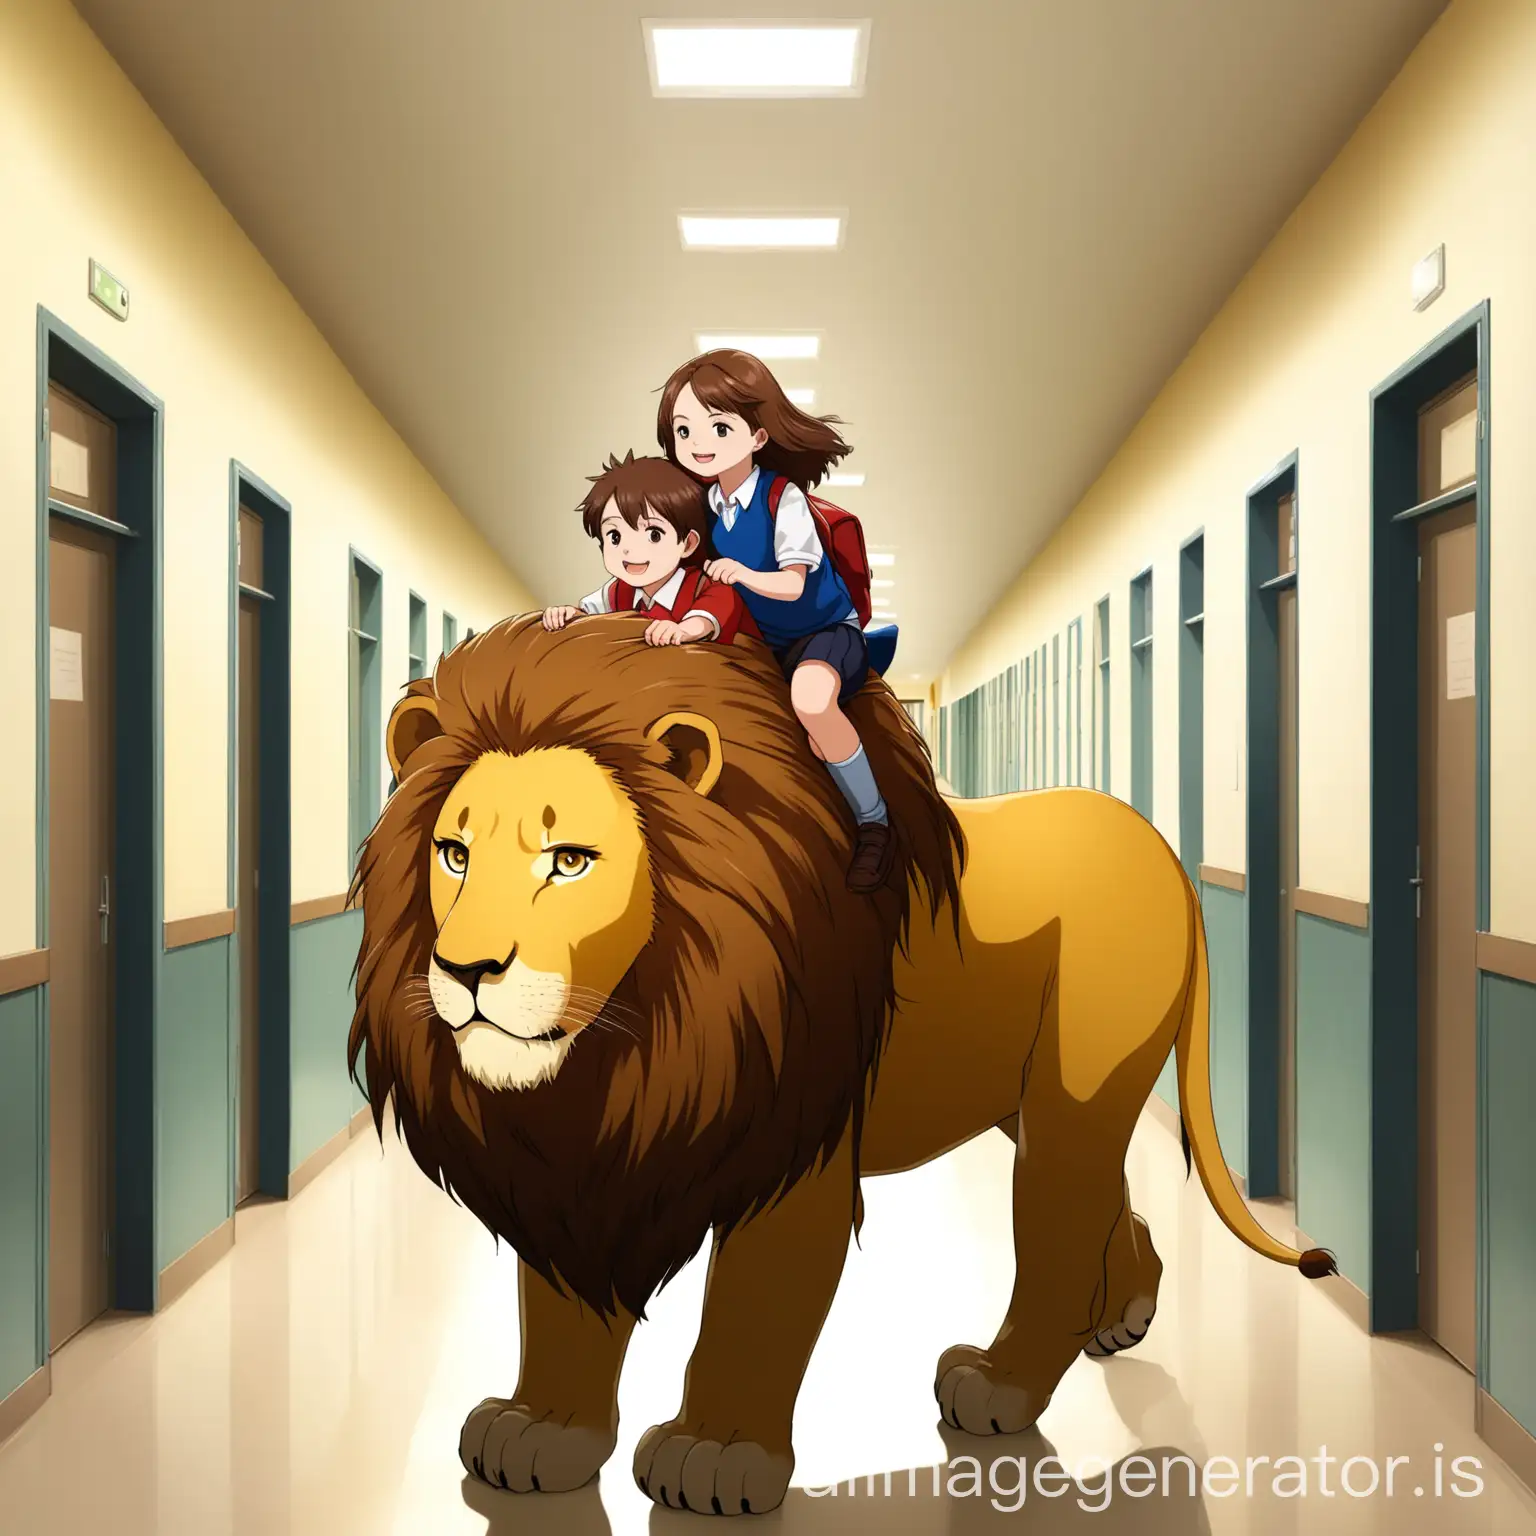 Children-Riding-Lion-in-School-Hallway